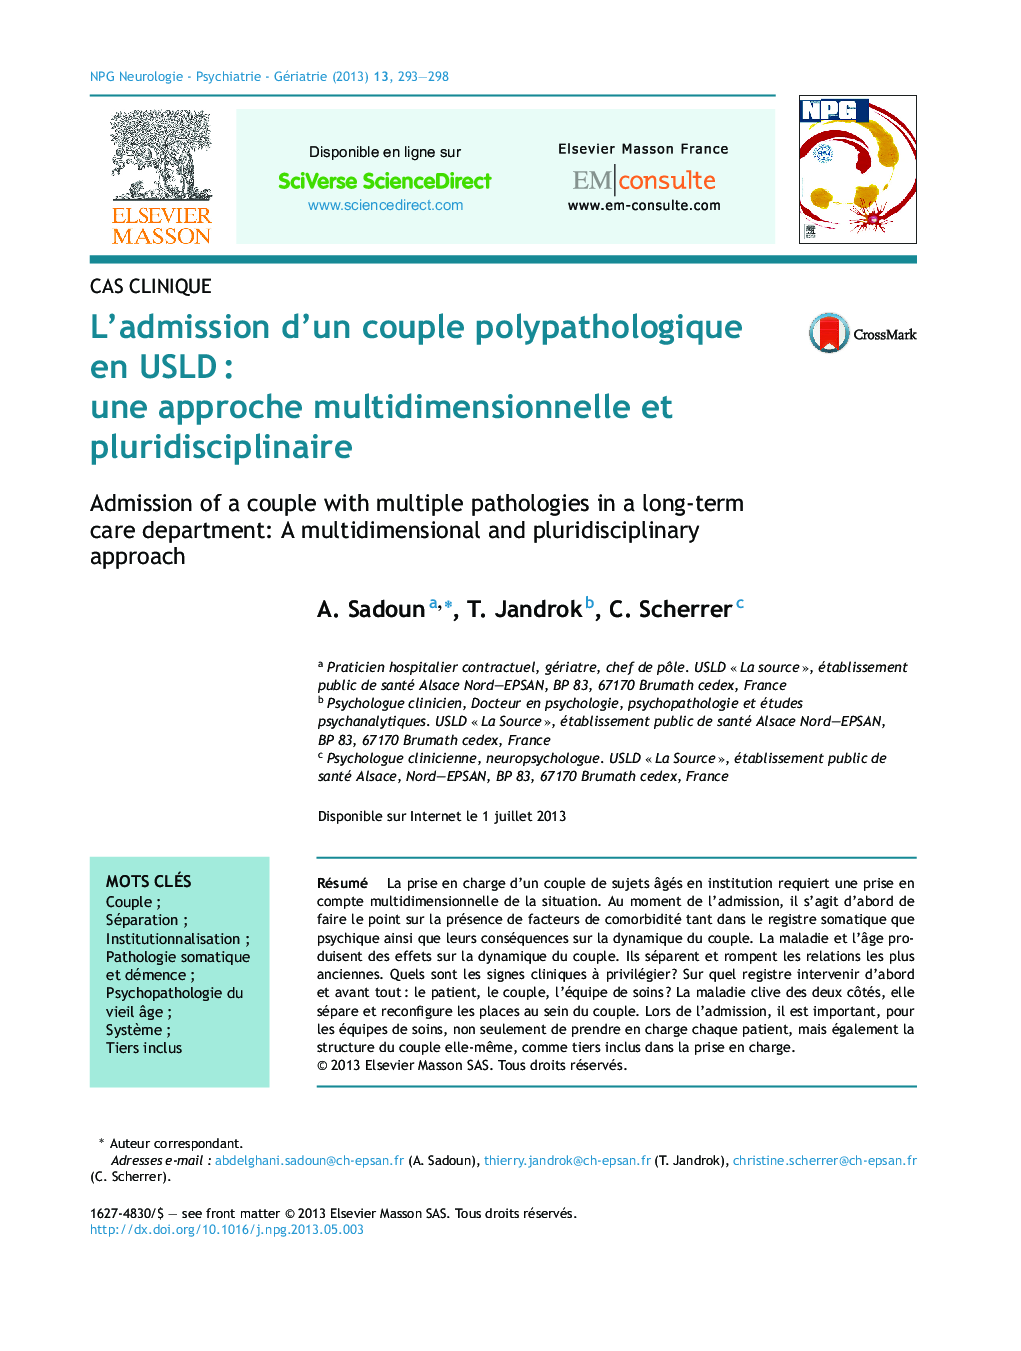 L'admission d'un couple polypathologique en USLDÂ : une approche multidimensionnelle et pluridisciplinaire